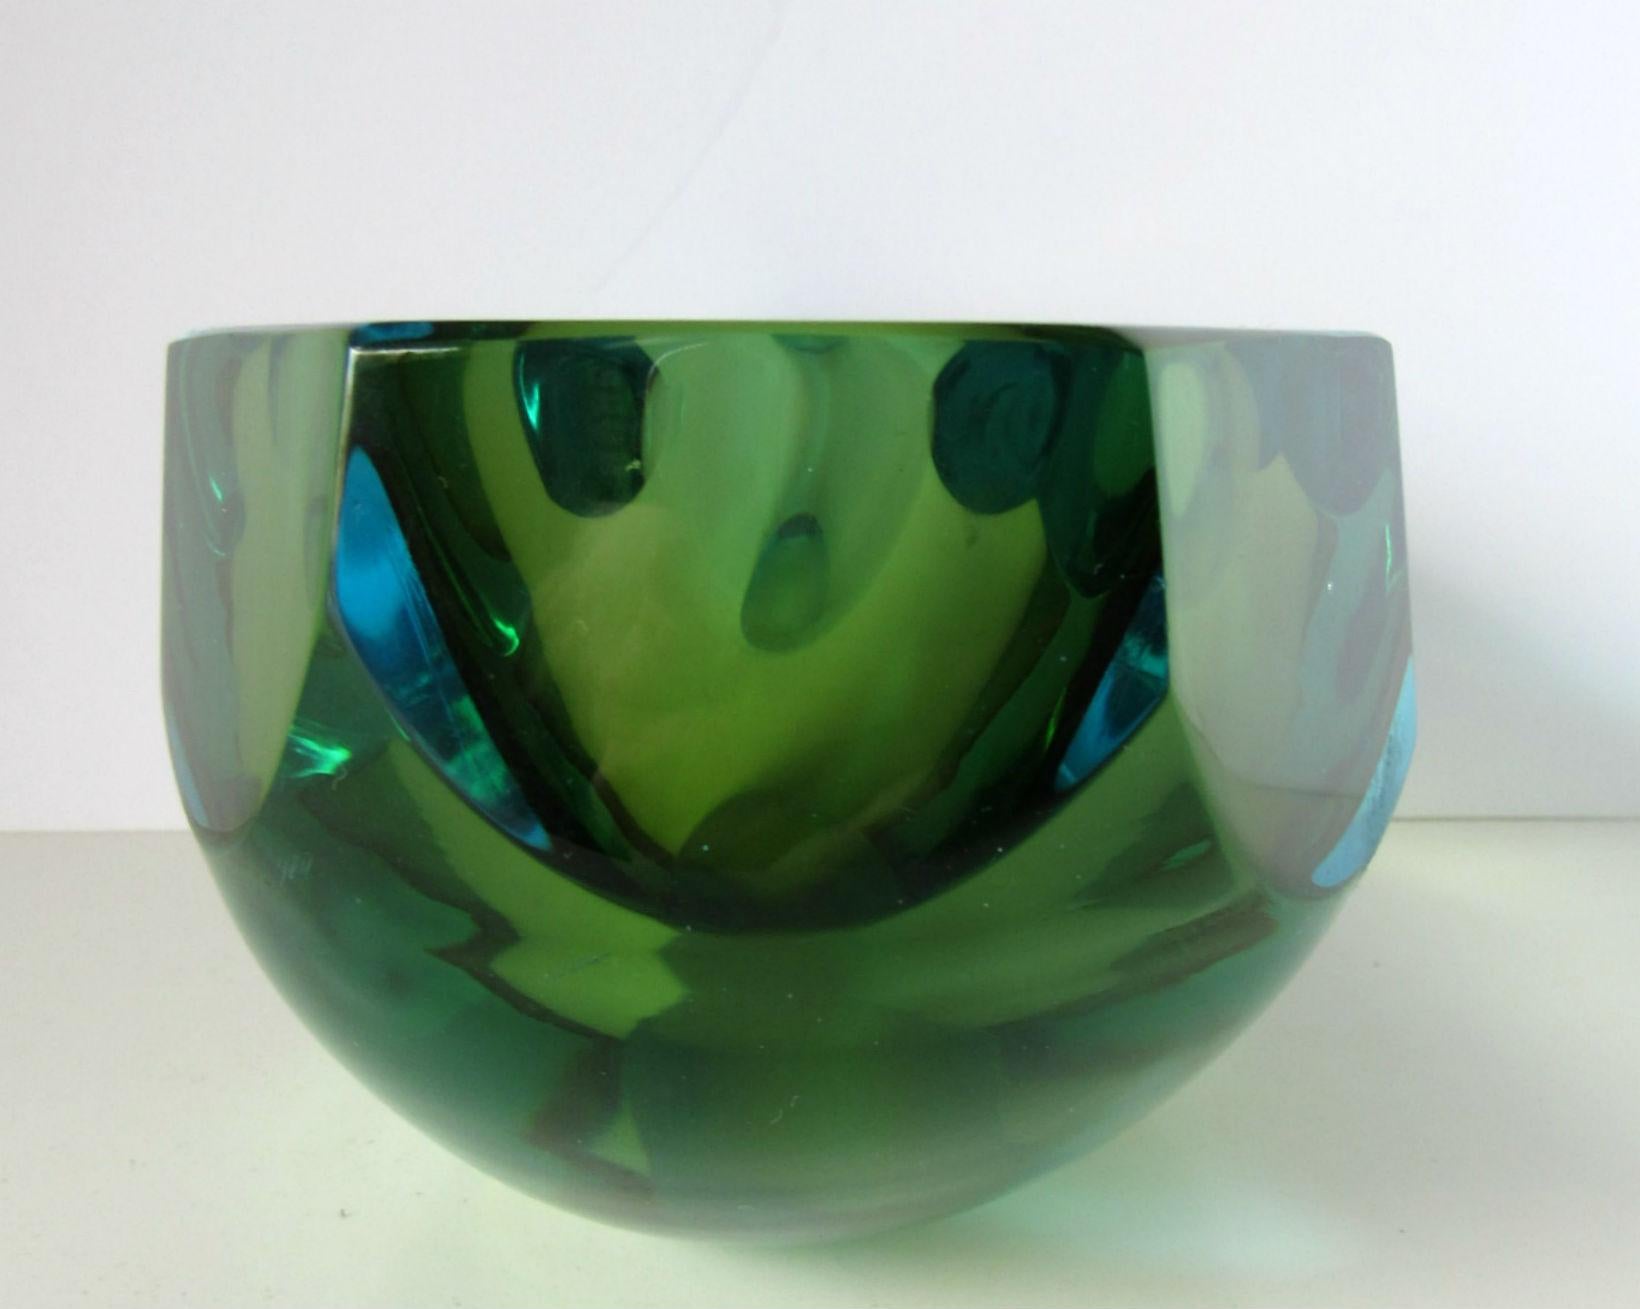 Poli Seguso Vetri d'Arte Murano Sommerso Blue Green Italian Art Glass Bowl (20. Jahrhundert)